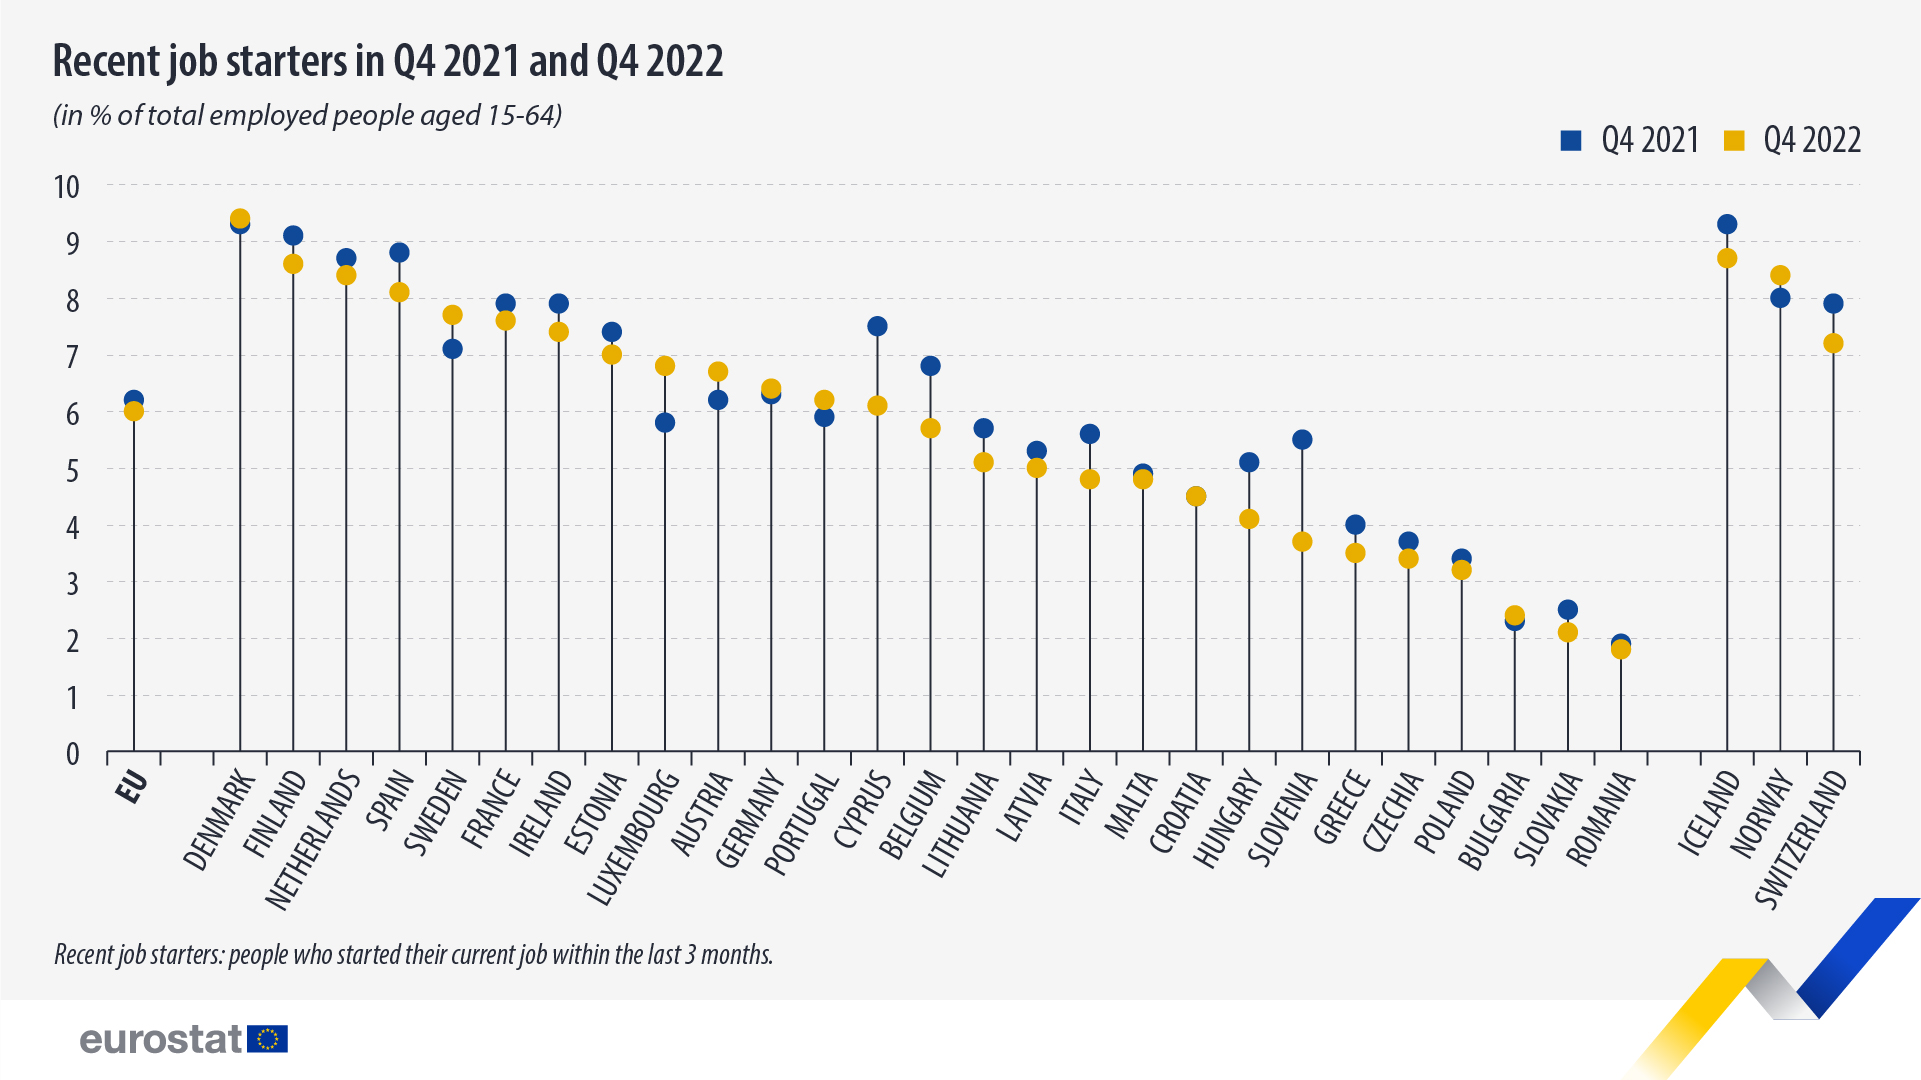 Γράφημα Lollipop: Πρόσφατες νέες θέσεις εργασίας το 4ο τρίμηνο του 2021 και το τέταρτο τρίμηνο του 2022, σε % του συνόλου των απασχολουμένων ατόμων ηλικίας 15-64 ετών στην ΕΕ και τις χώρες ΕΖΕΣ